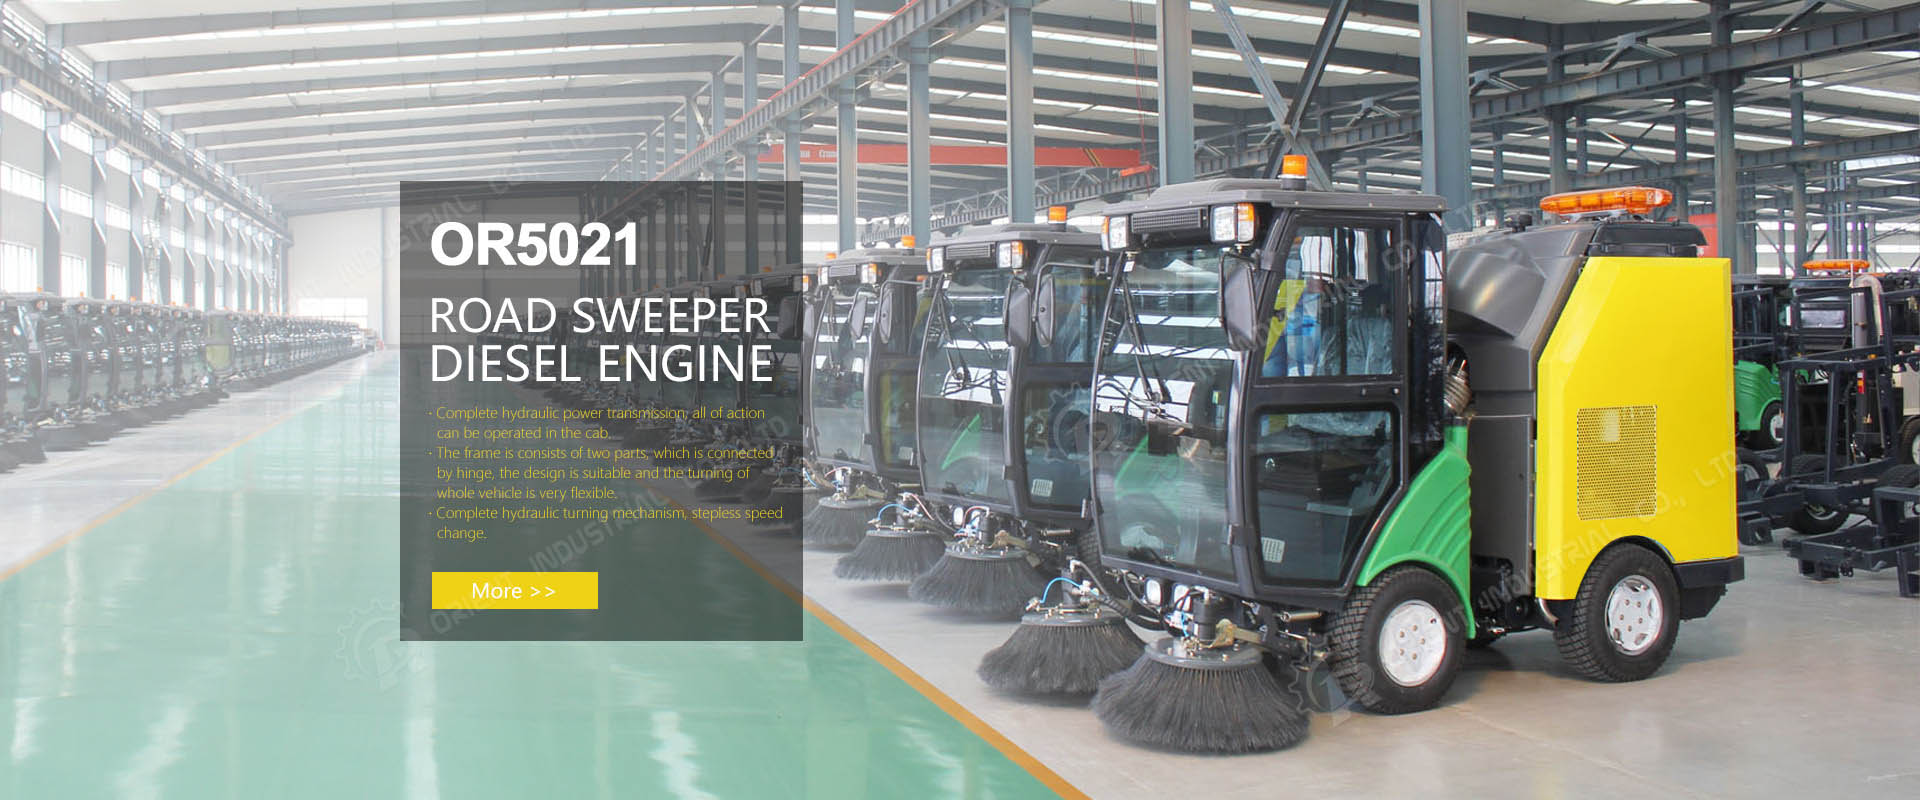 Diesel Road Sweeper OR5021